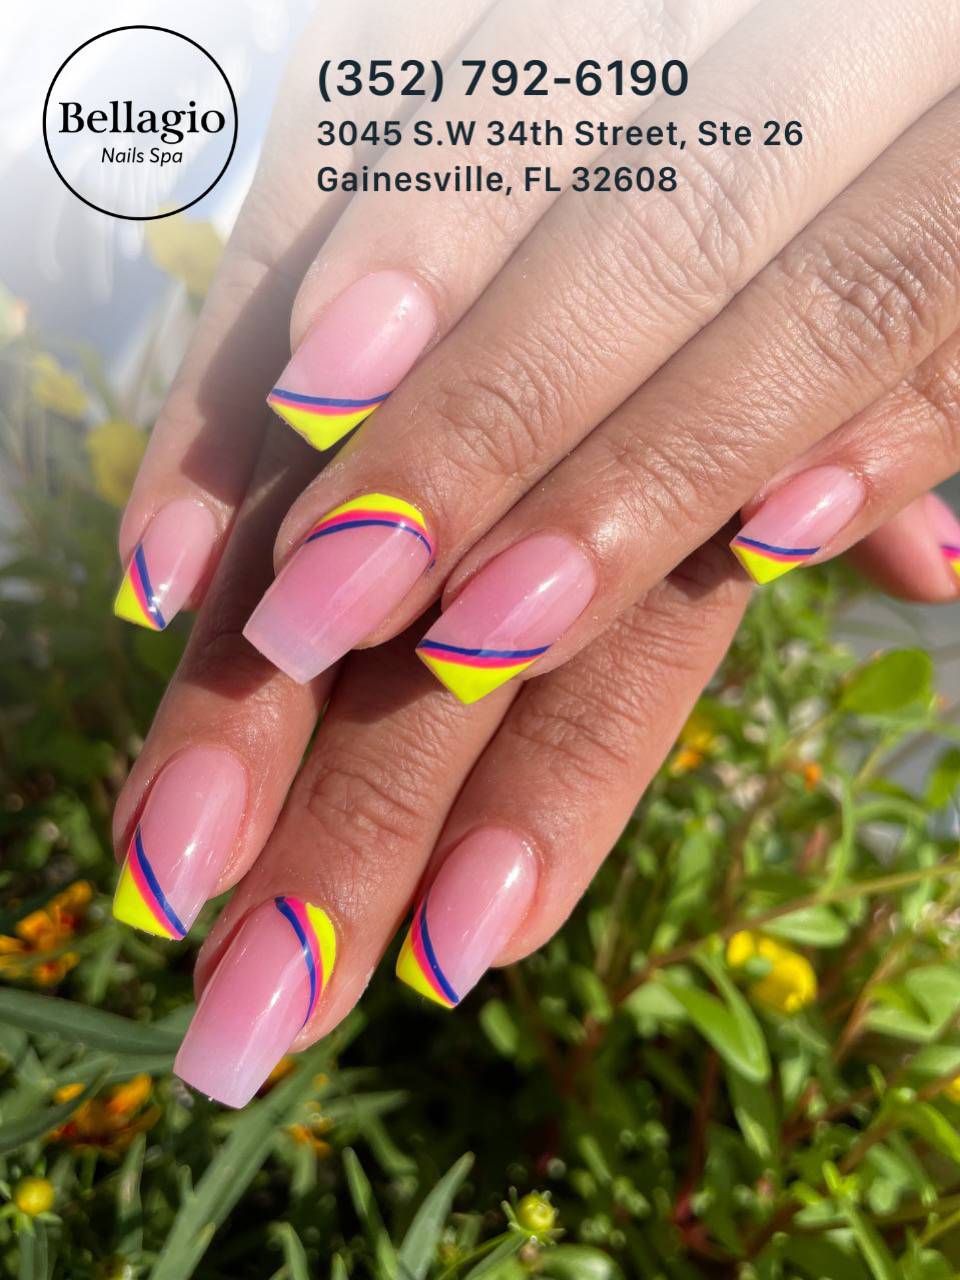 Bellagio Nails Spa - Nail Salon In Gainesville, Florida 32608